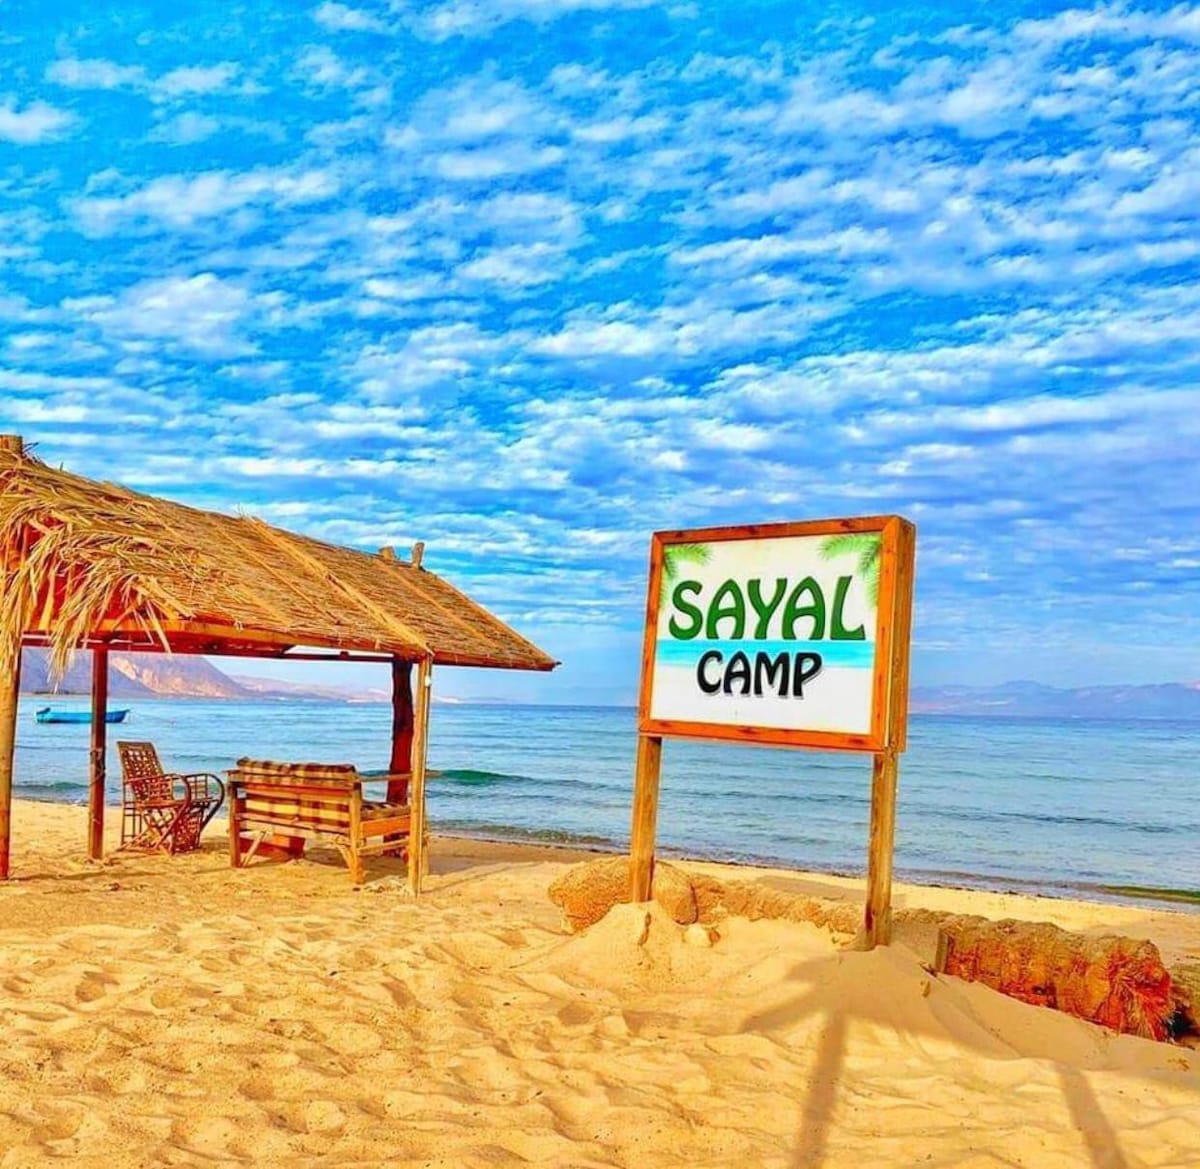 Sayal camp